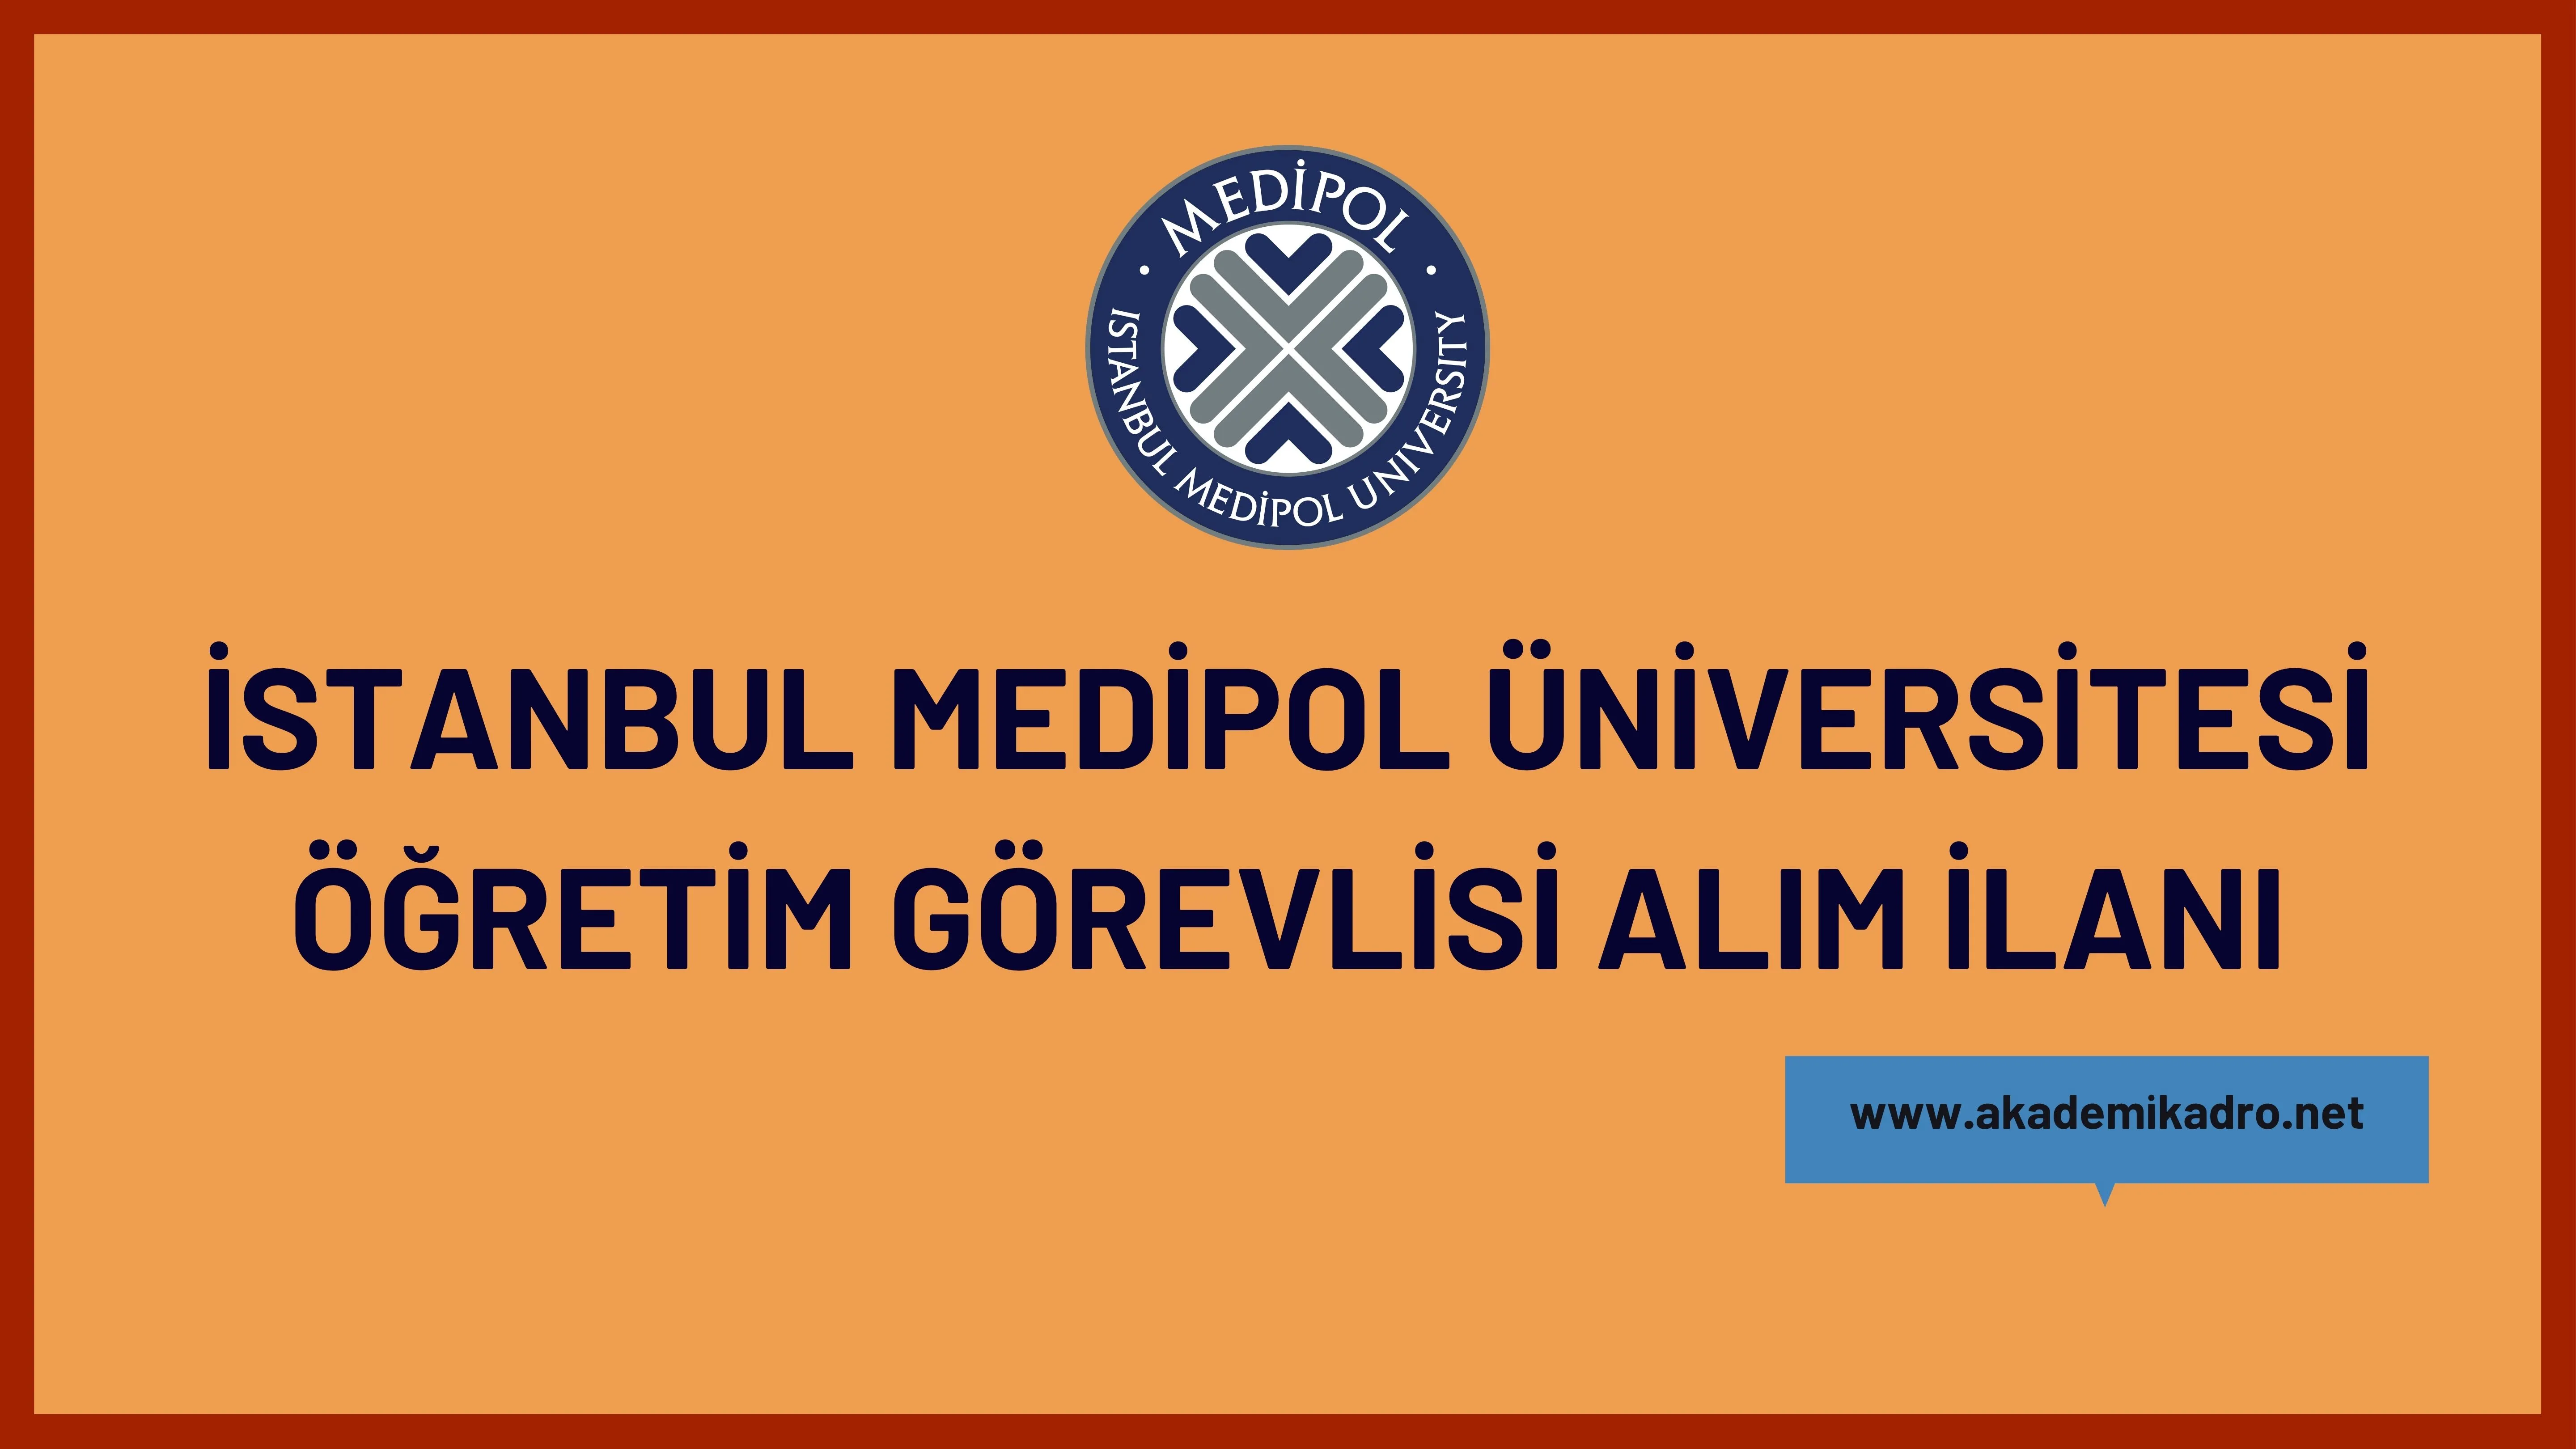 İstanbul Medipol Üniversitesi 16 öğretim görevlisi alacak. Son başvuru tarihi 08 Ağustos 2023.